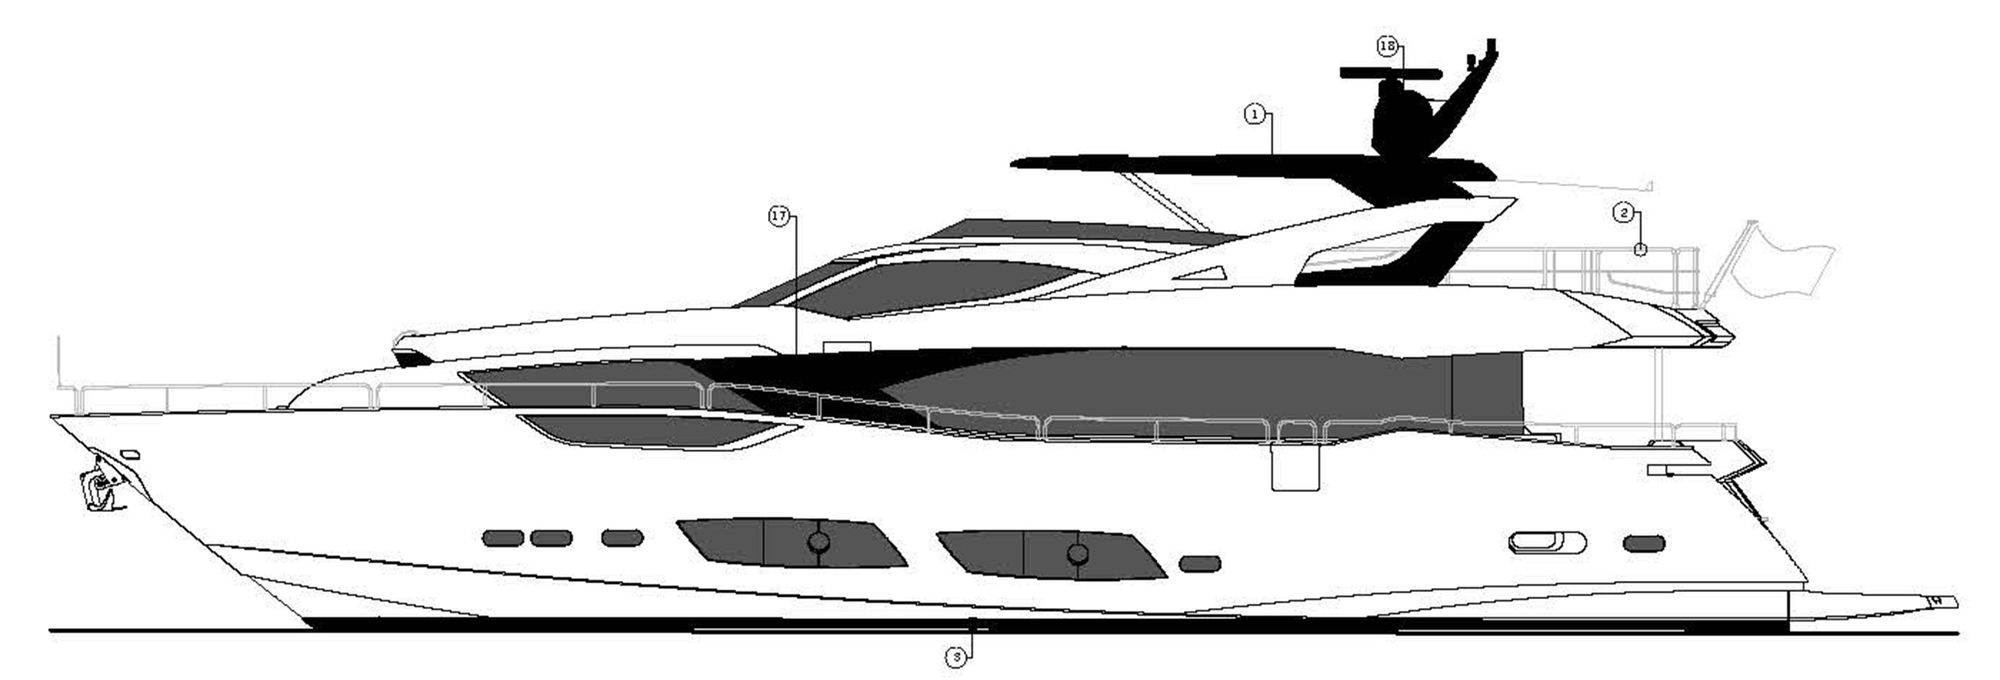 sunseeker yacht 95